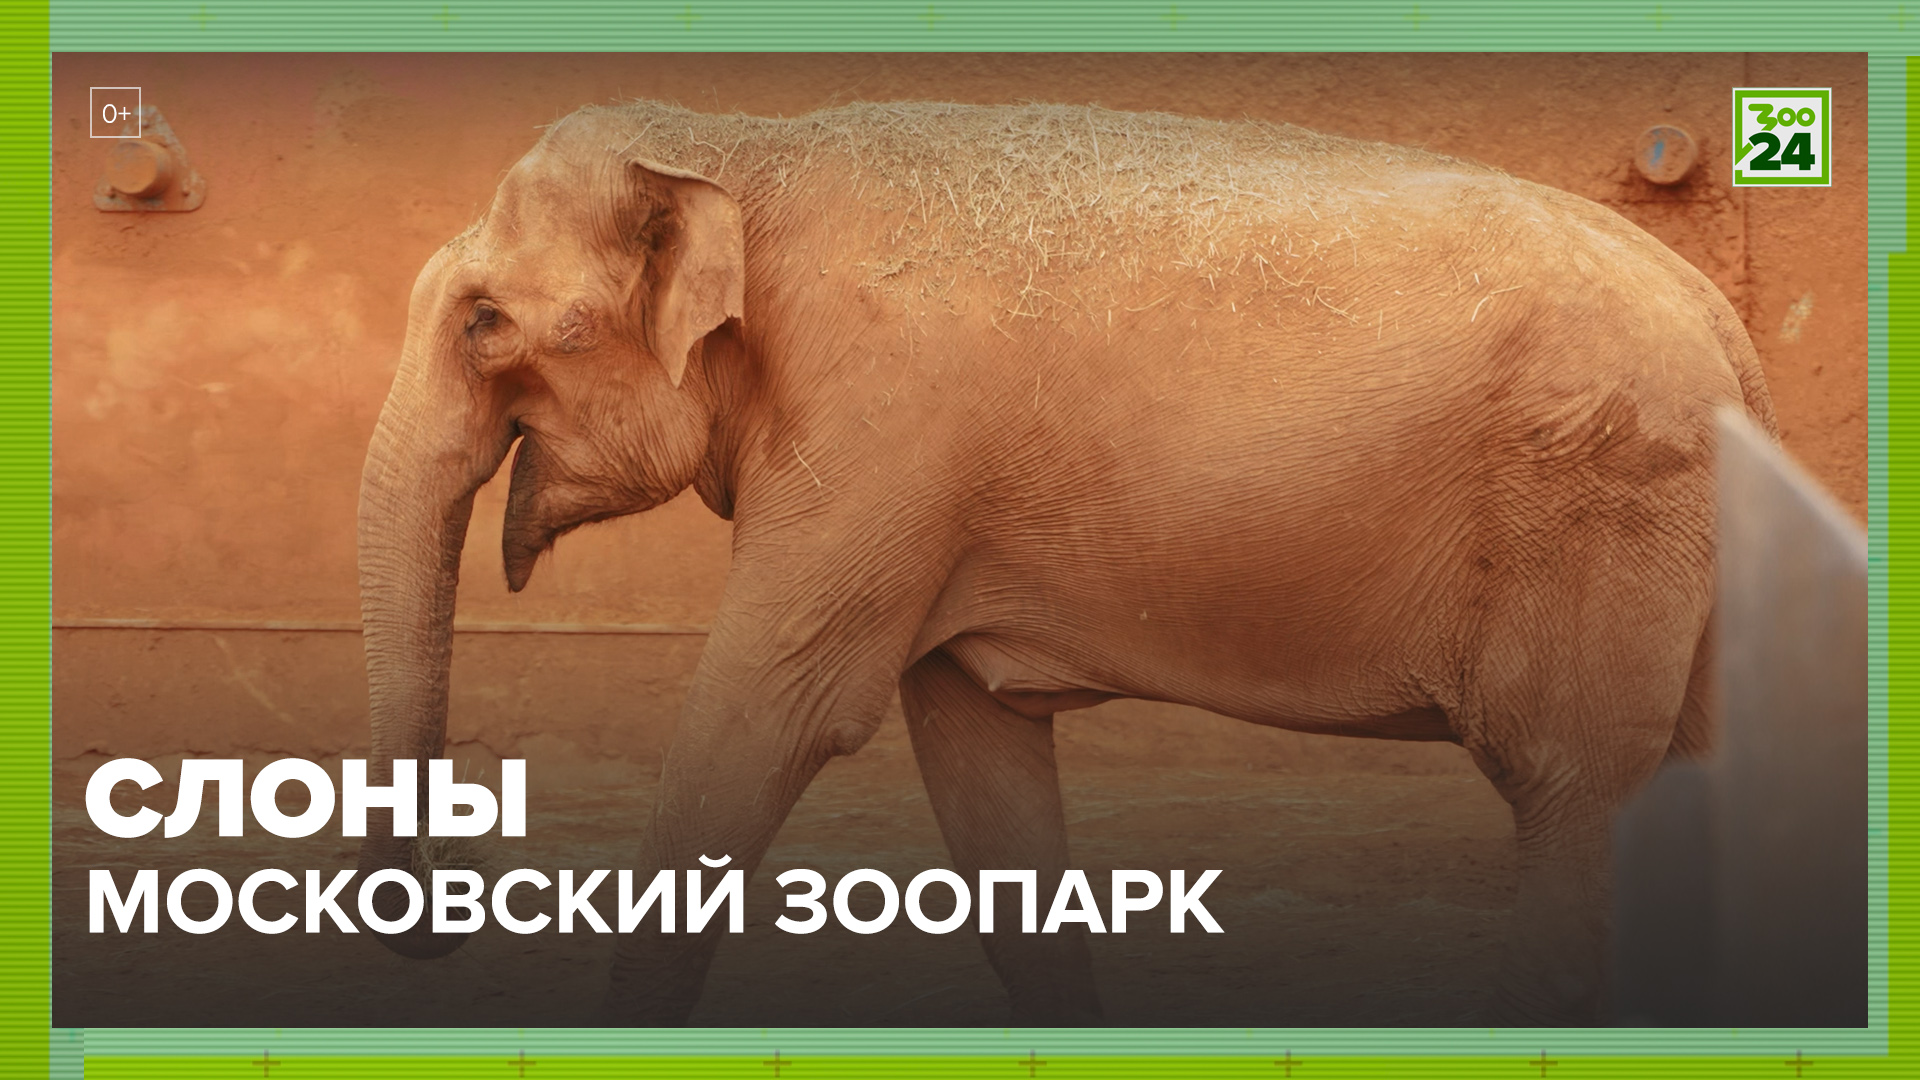 Слоны | Московский зоопарк | ЗОО 24